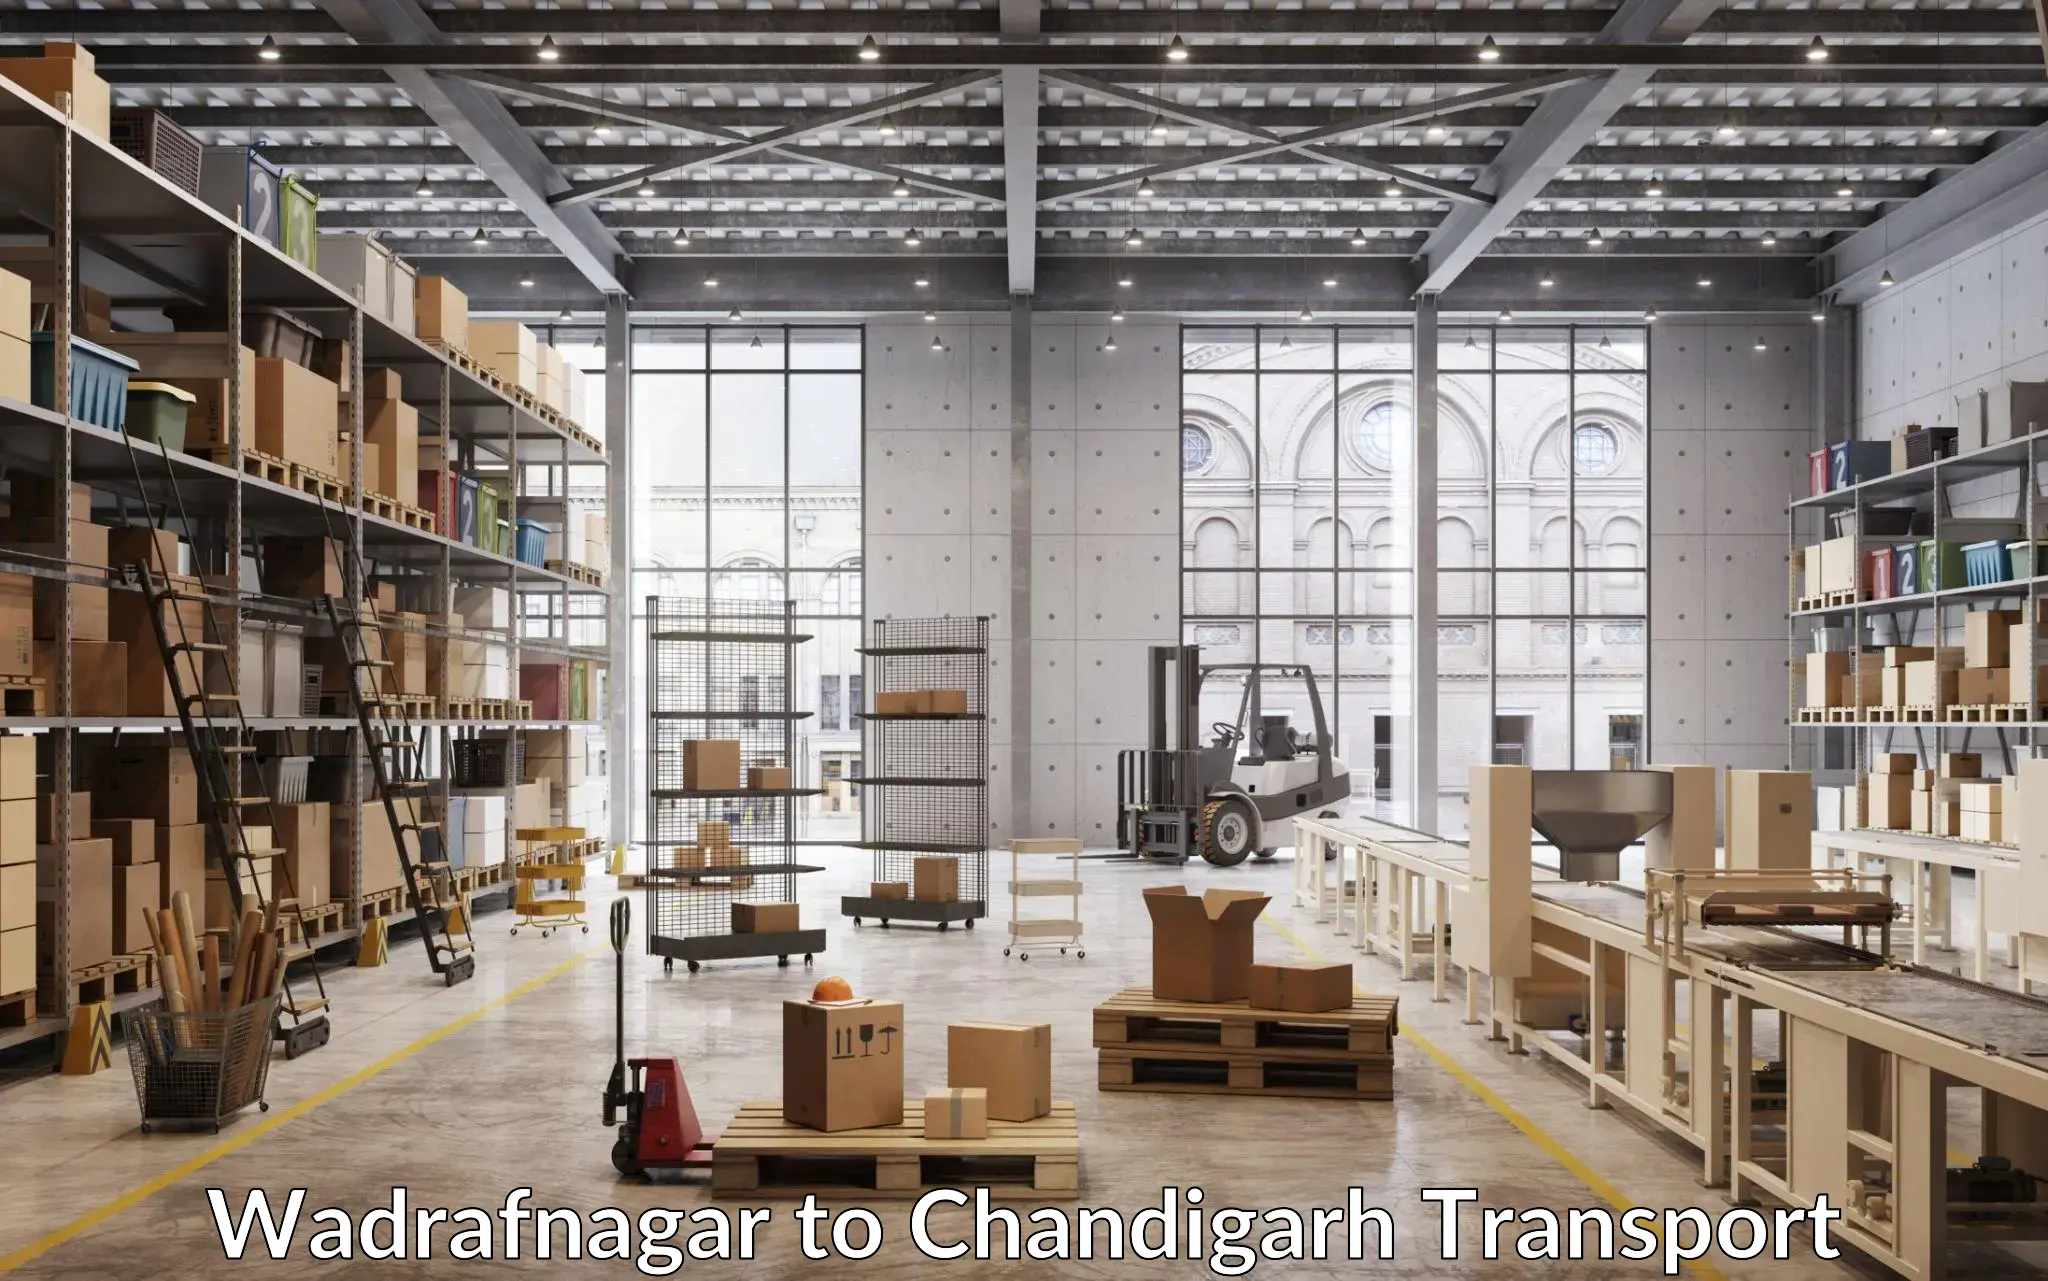 Container transportation services Wadrafnagar to Chandigarh